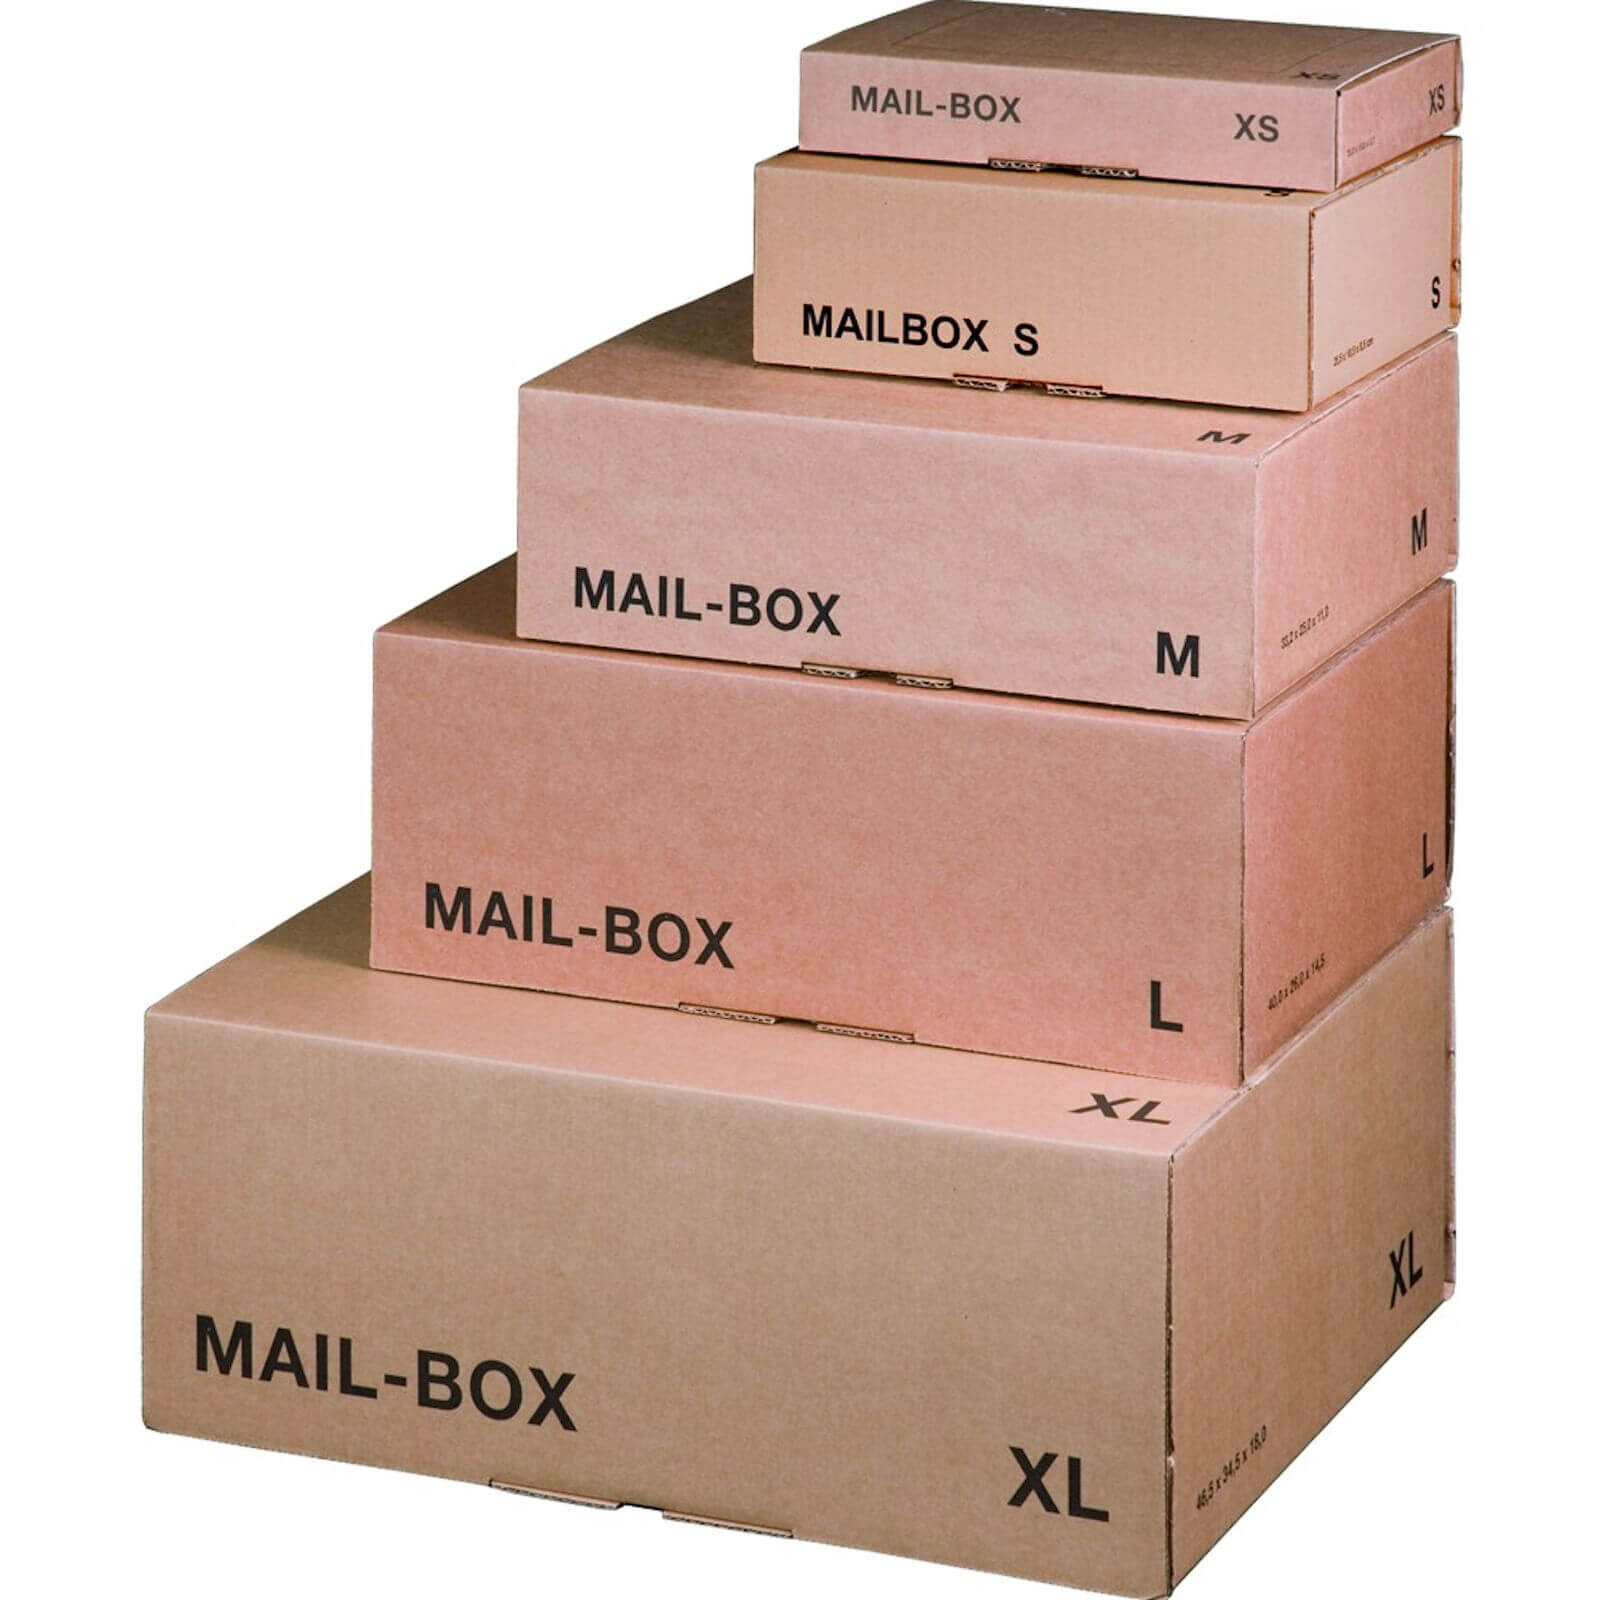 Размер коробки а5. Картонные коробки Размеры. Коробки для посылок. Размеры картонных коробок. Упаковочная коробка для посылки.